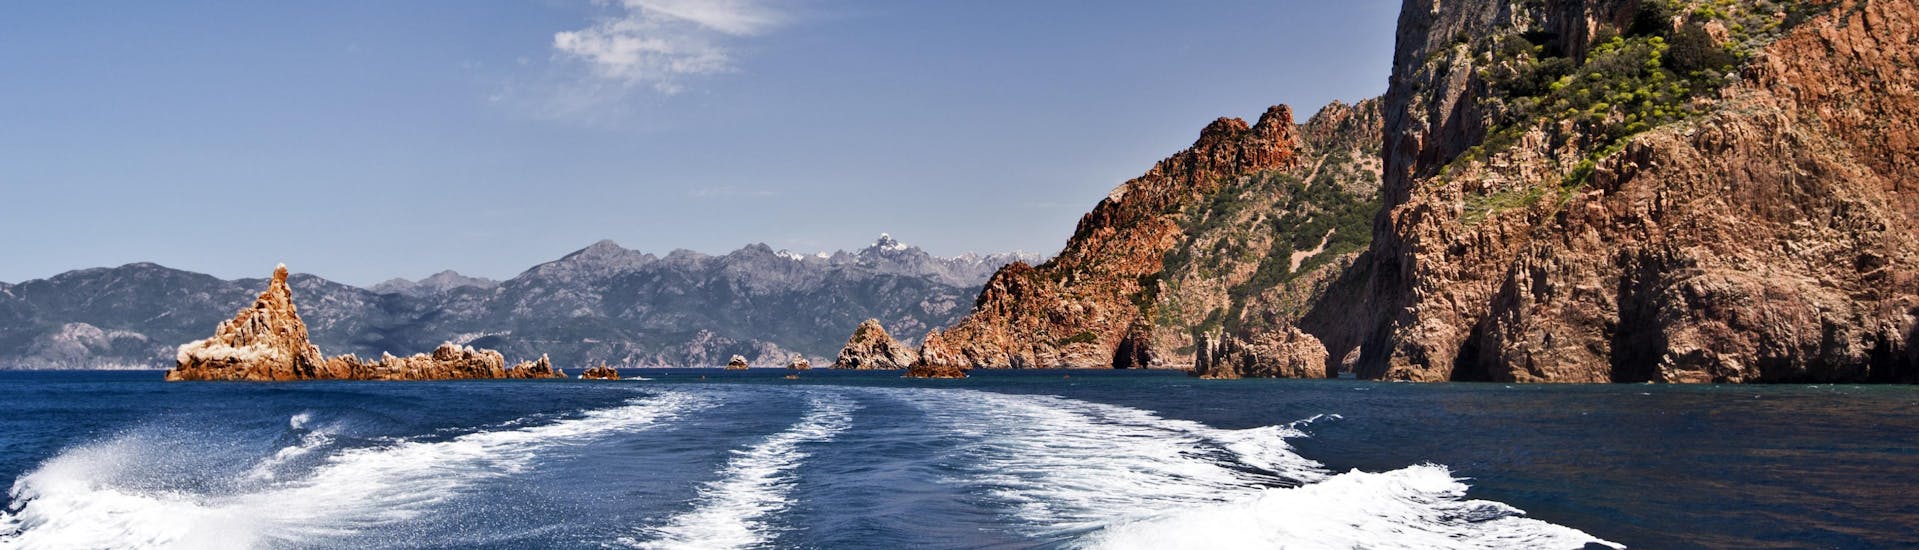 Vue de l'arrière d'un bateau lors d'une balade en bateau vers l'impressionnant Capo Rosso sur la côte ouest de la Corse.